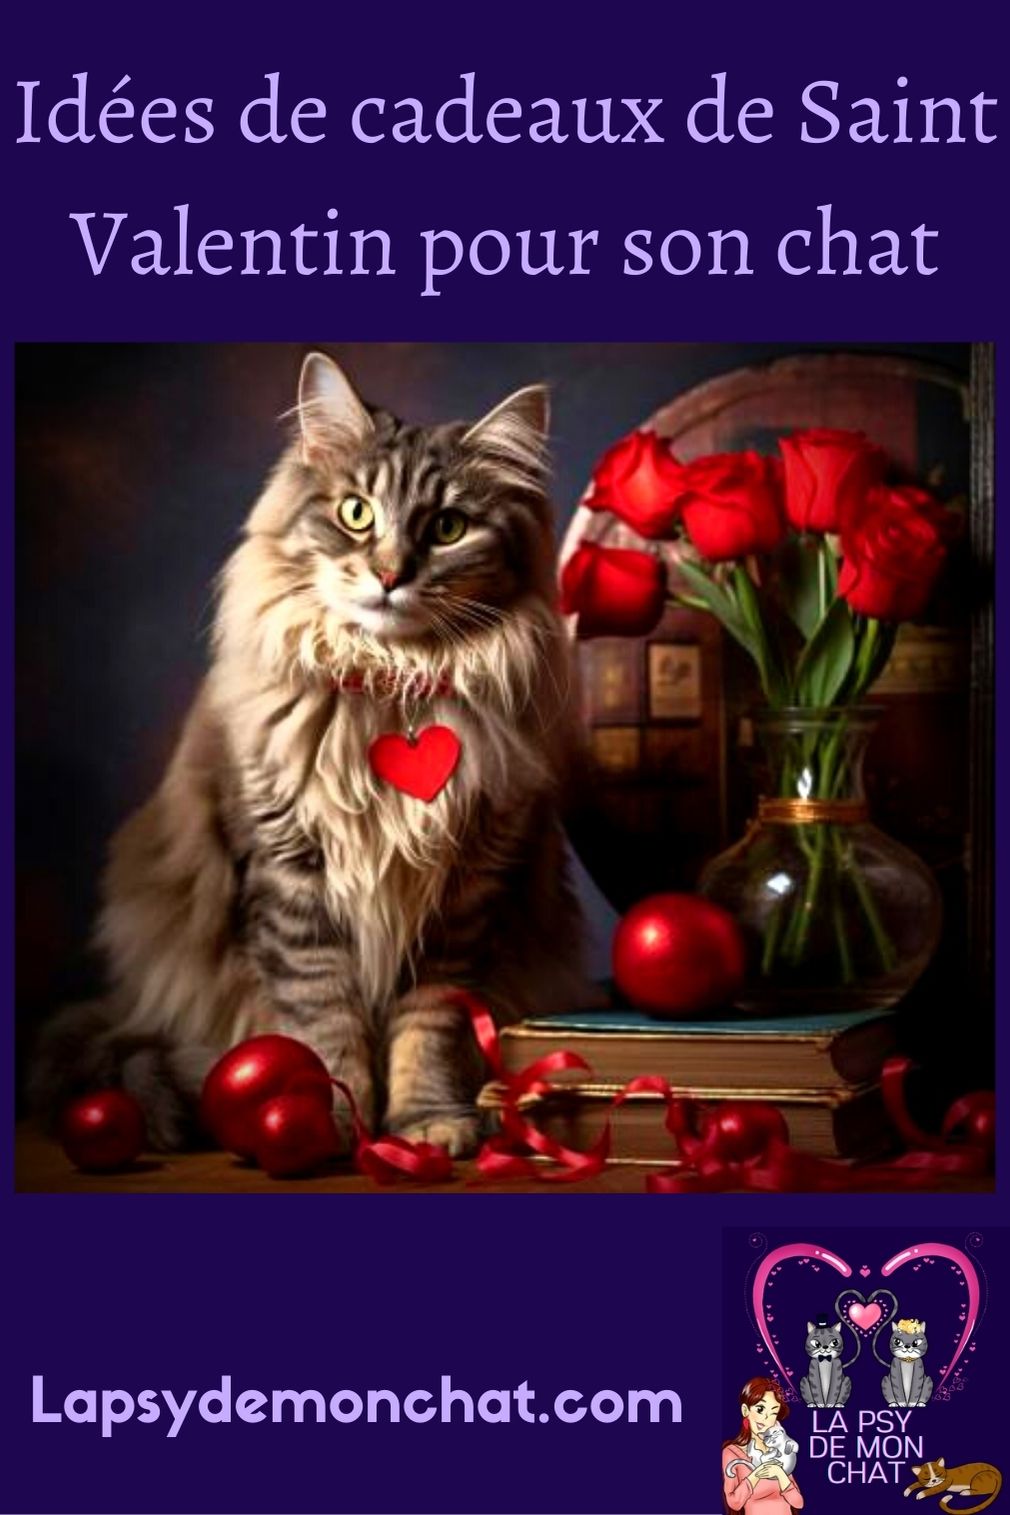 Idées de cadeaux de Saint Valentin pour son chat - pinterest